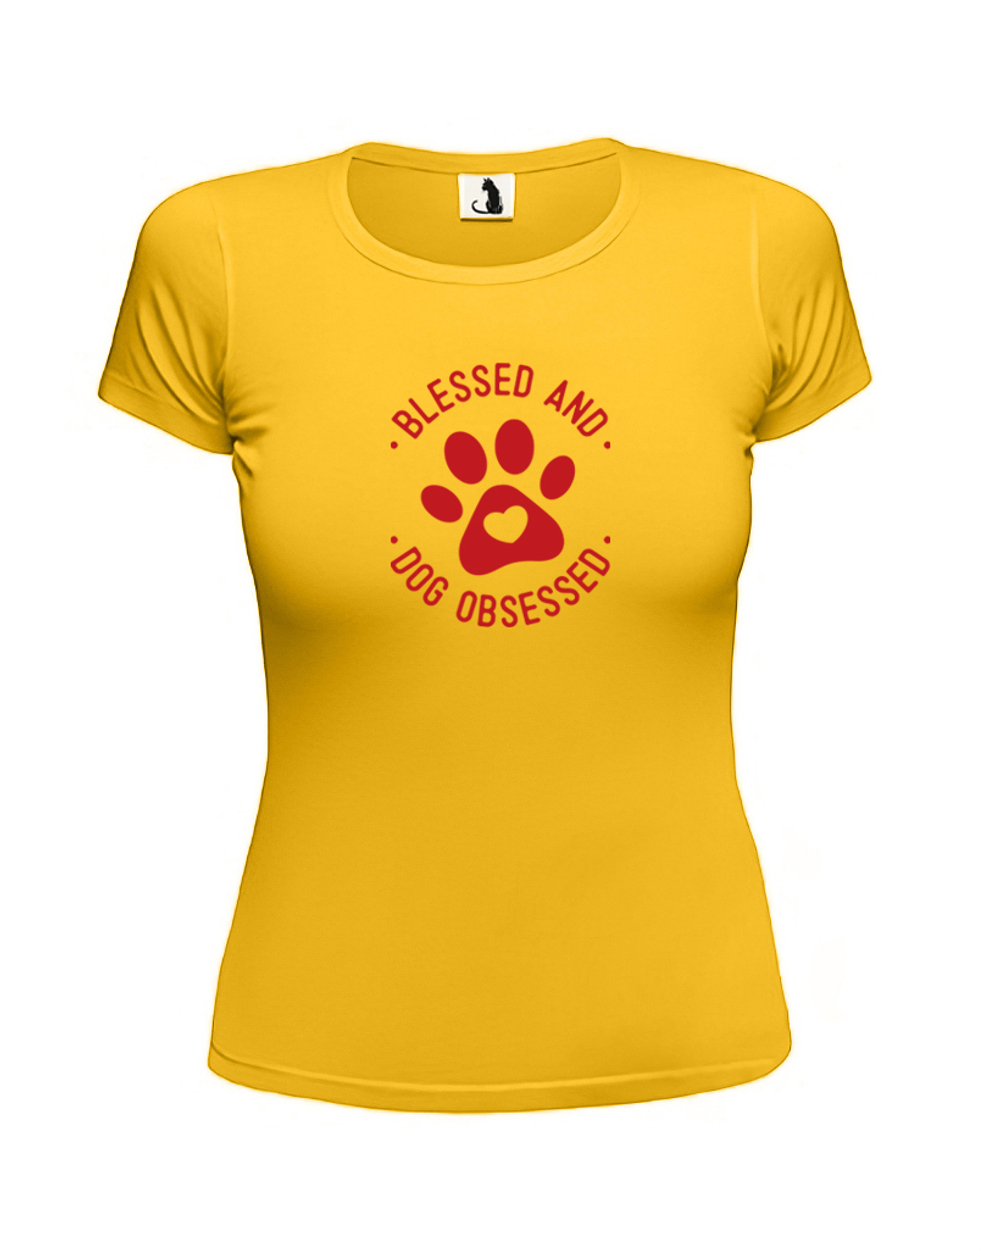 Футболка Blessed and dog obsessed женская приталенная желтая с красным рисунком